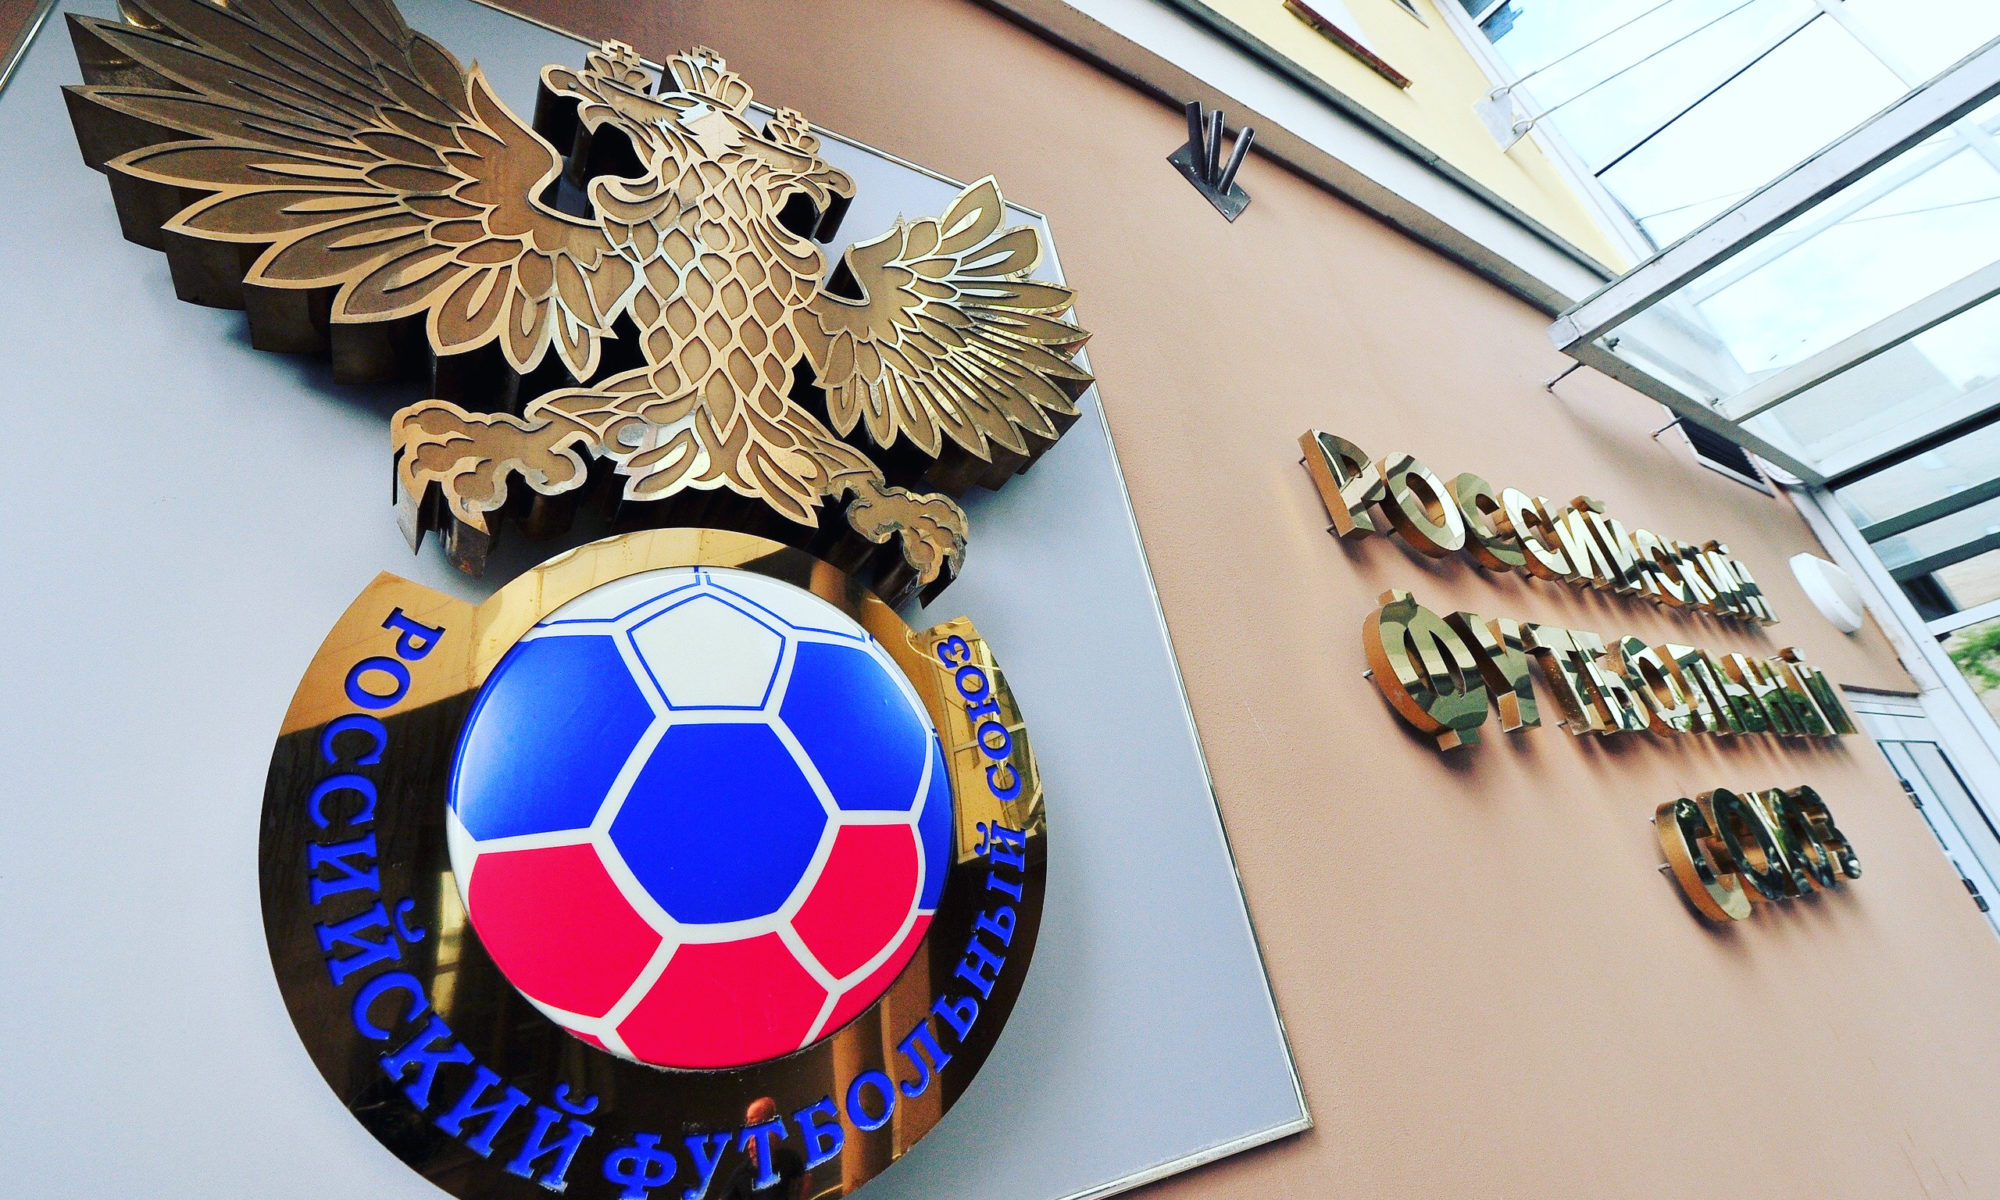 Российский футбольный союз решил соблюдать антироссийские санкции по Крыму. Это как?